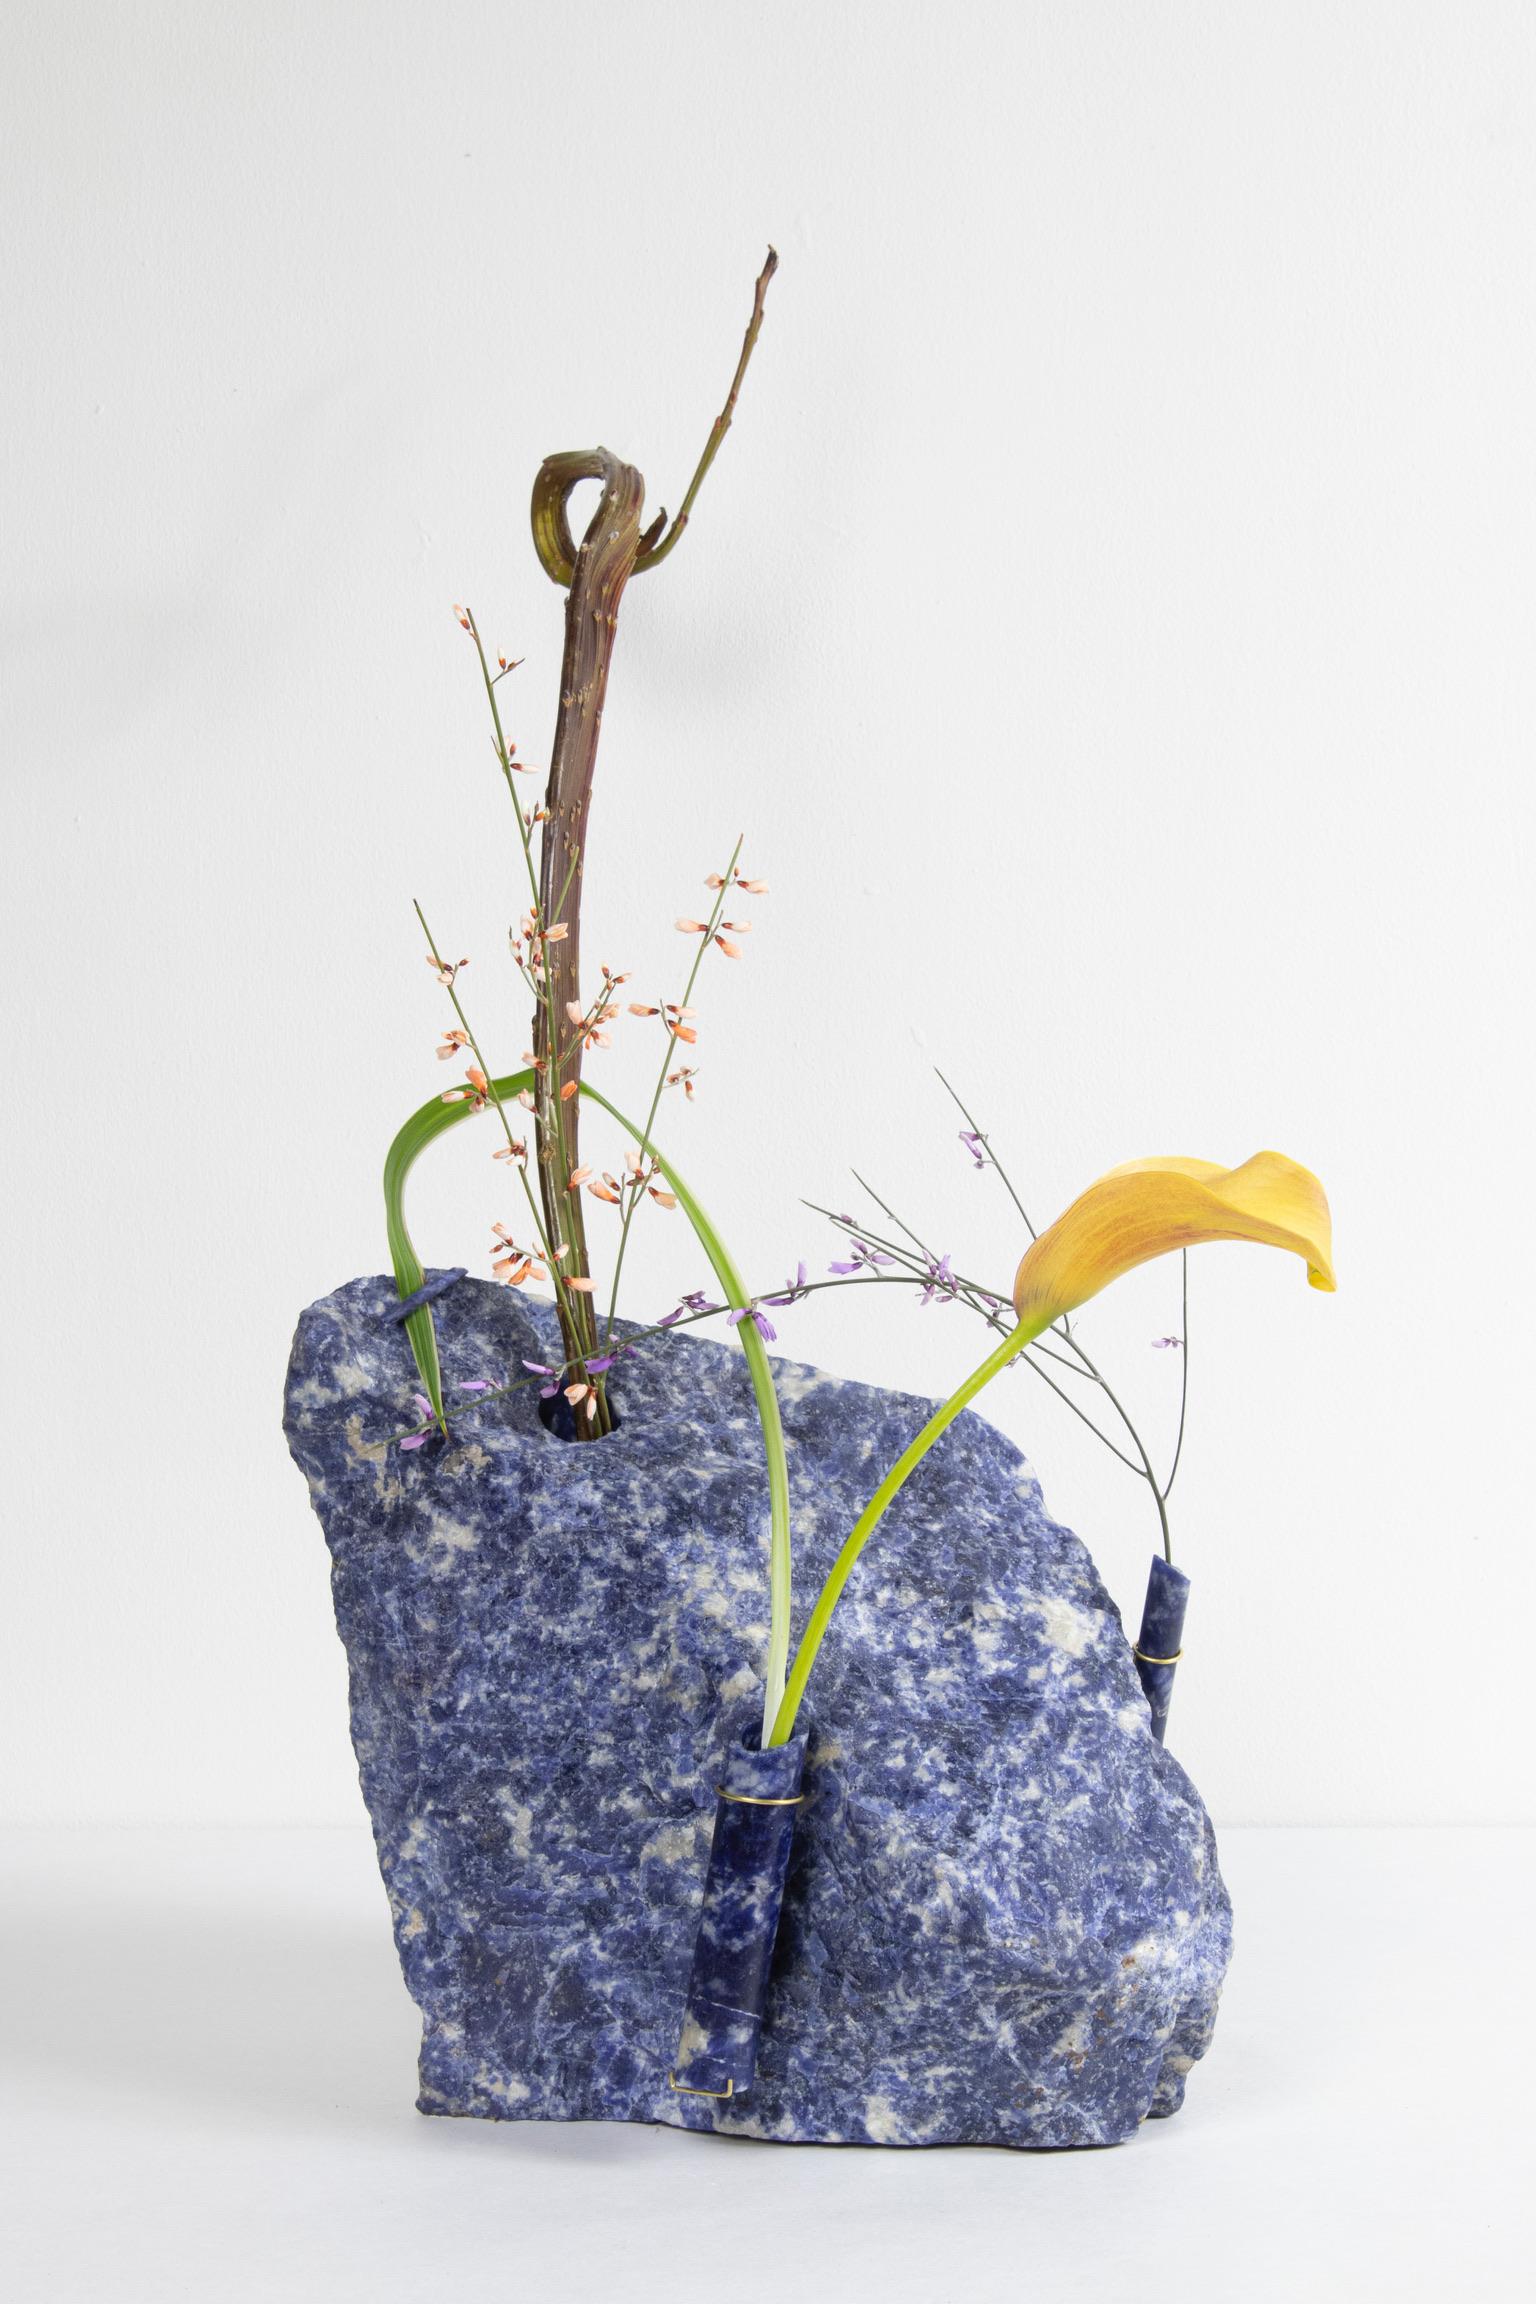 Vase à fleurs Sodalite de Studio DO
Dimensions : D 23 x L 16 x H 24 cm
MATERIAL : Sodalite, laiton.
15 kg.

Les fleurs sont intrinsèquement liées à la composition et à la terre.
Influencés par divers récipients d'hier à aujourd'hui, tels que le vase